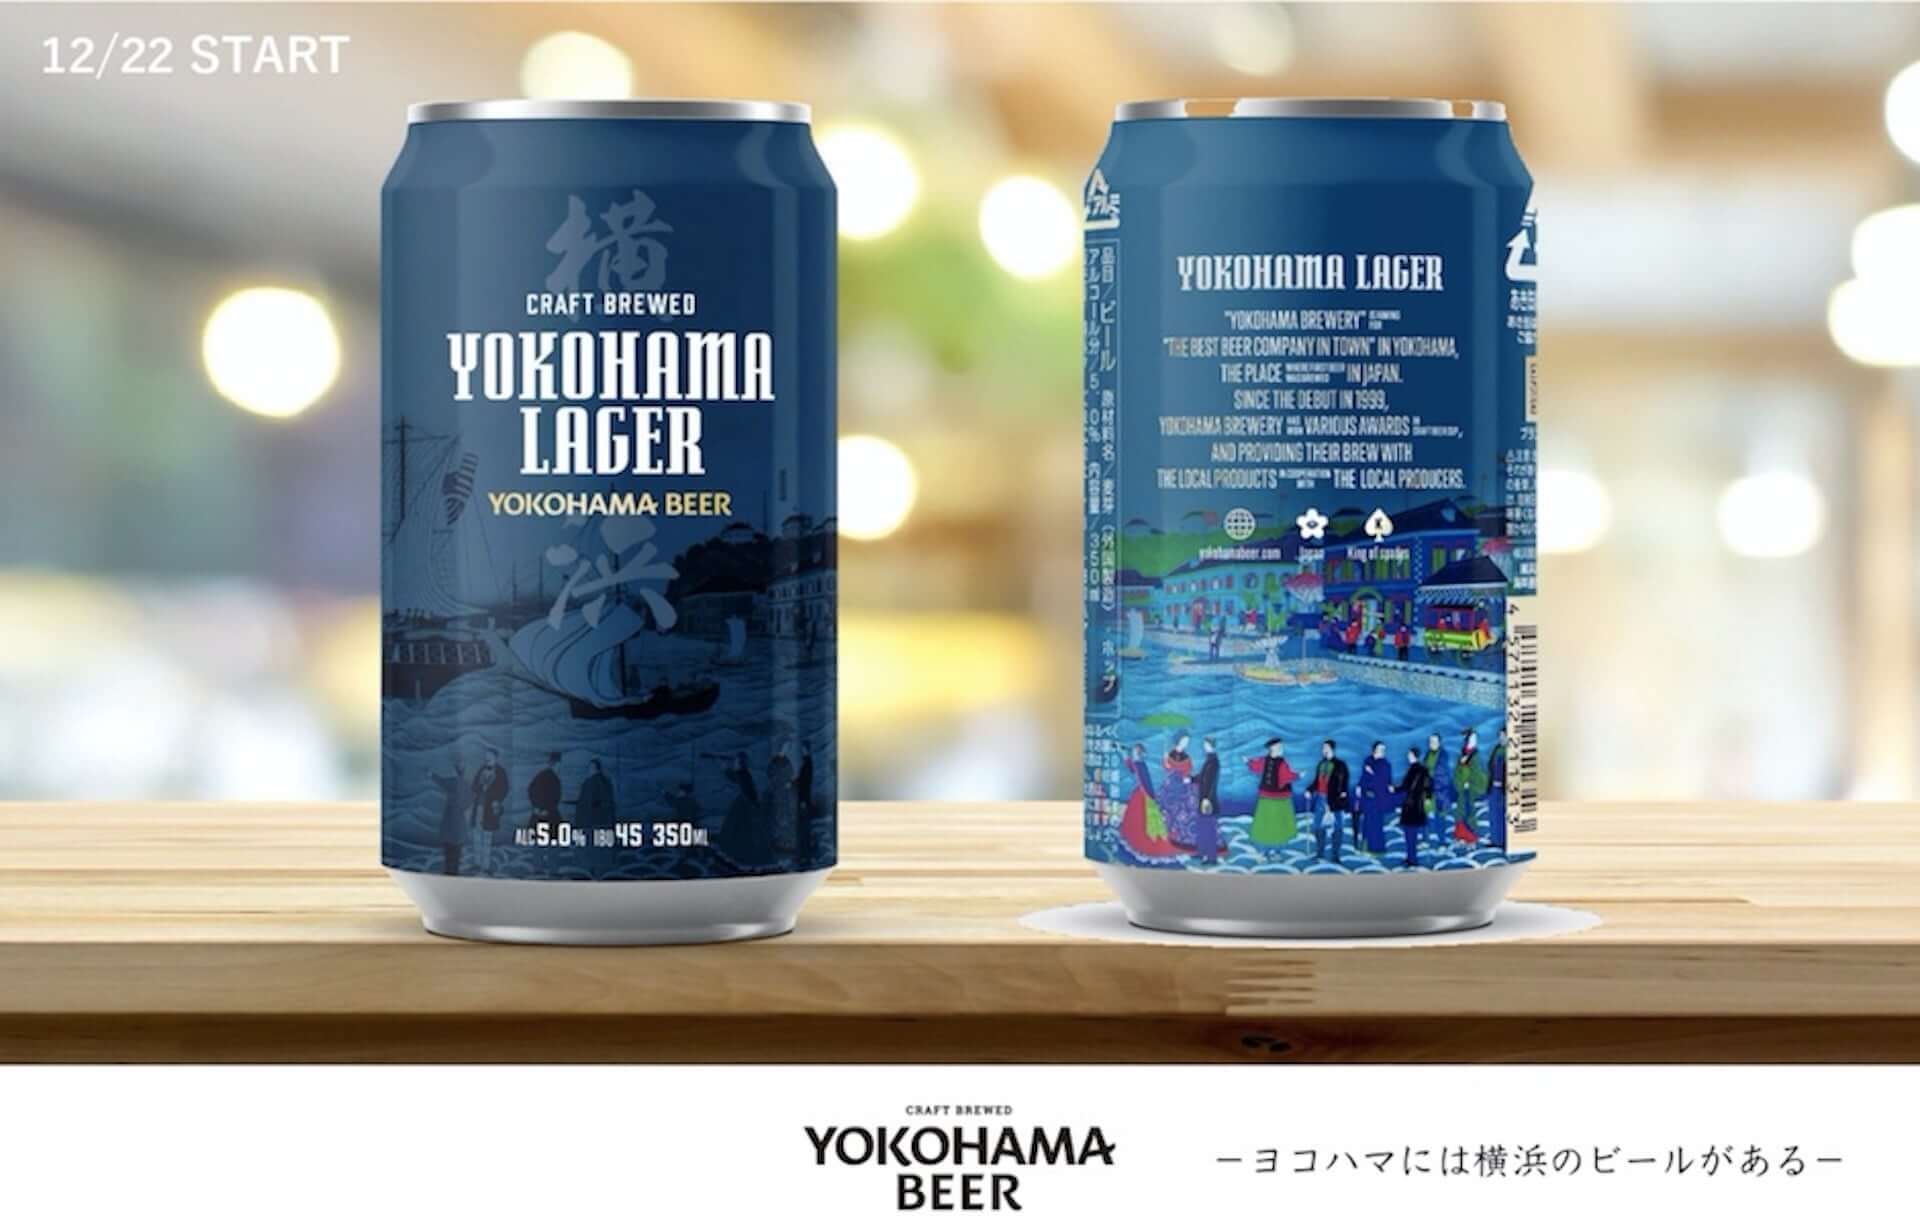 クラフトビールメーカー「横浜ビール」初の缶ビールが発売決定！オリジナルTシャツなどがもらえるSNSキャンペーンも gourmet201210_yokohamabeer_6-1920x1230